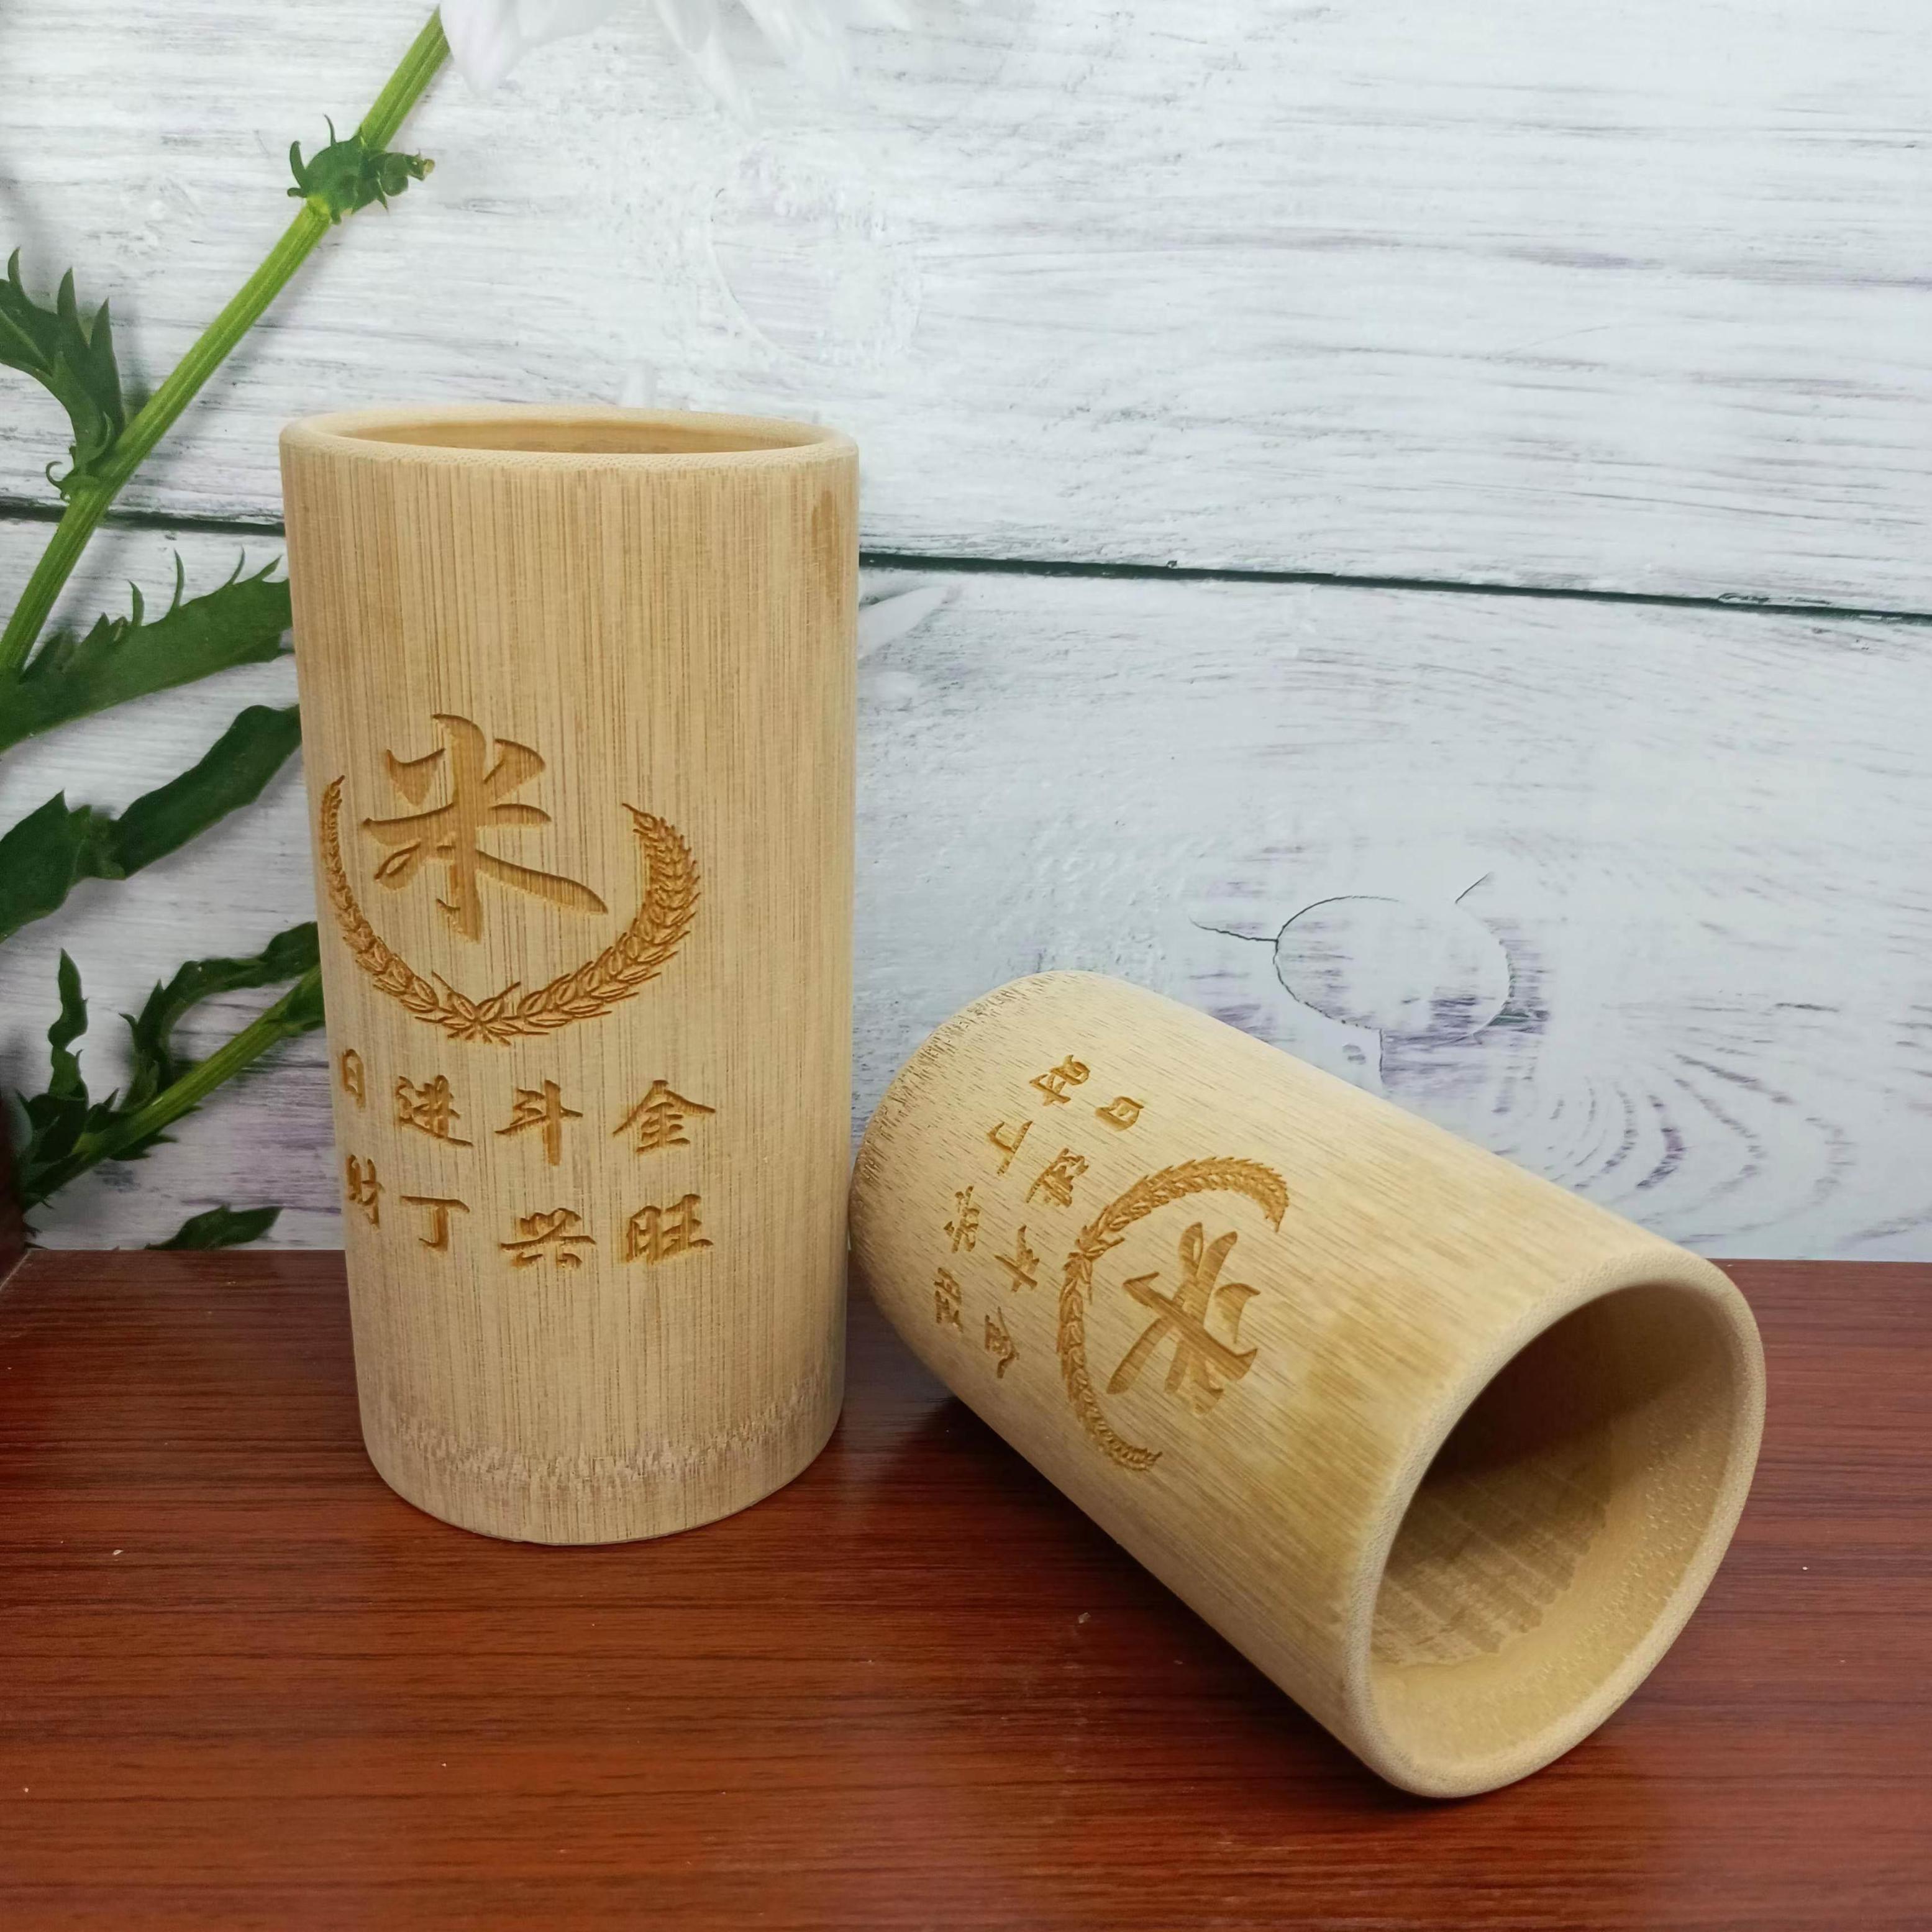 量米升子楠竹竹筒舀米杯老式米升筒量米筒量米器家用无漆米斗